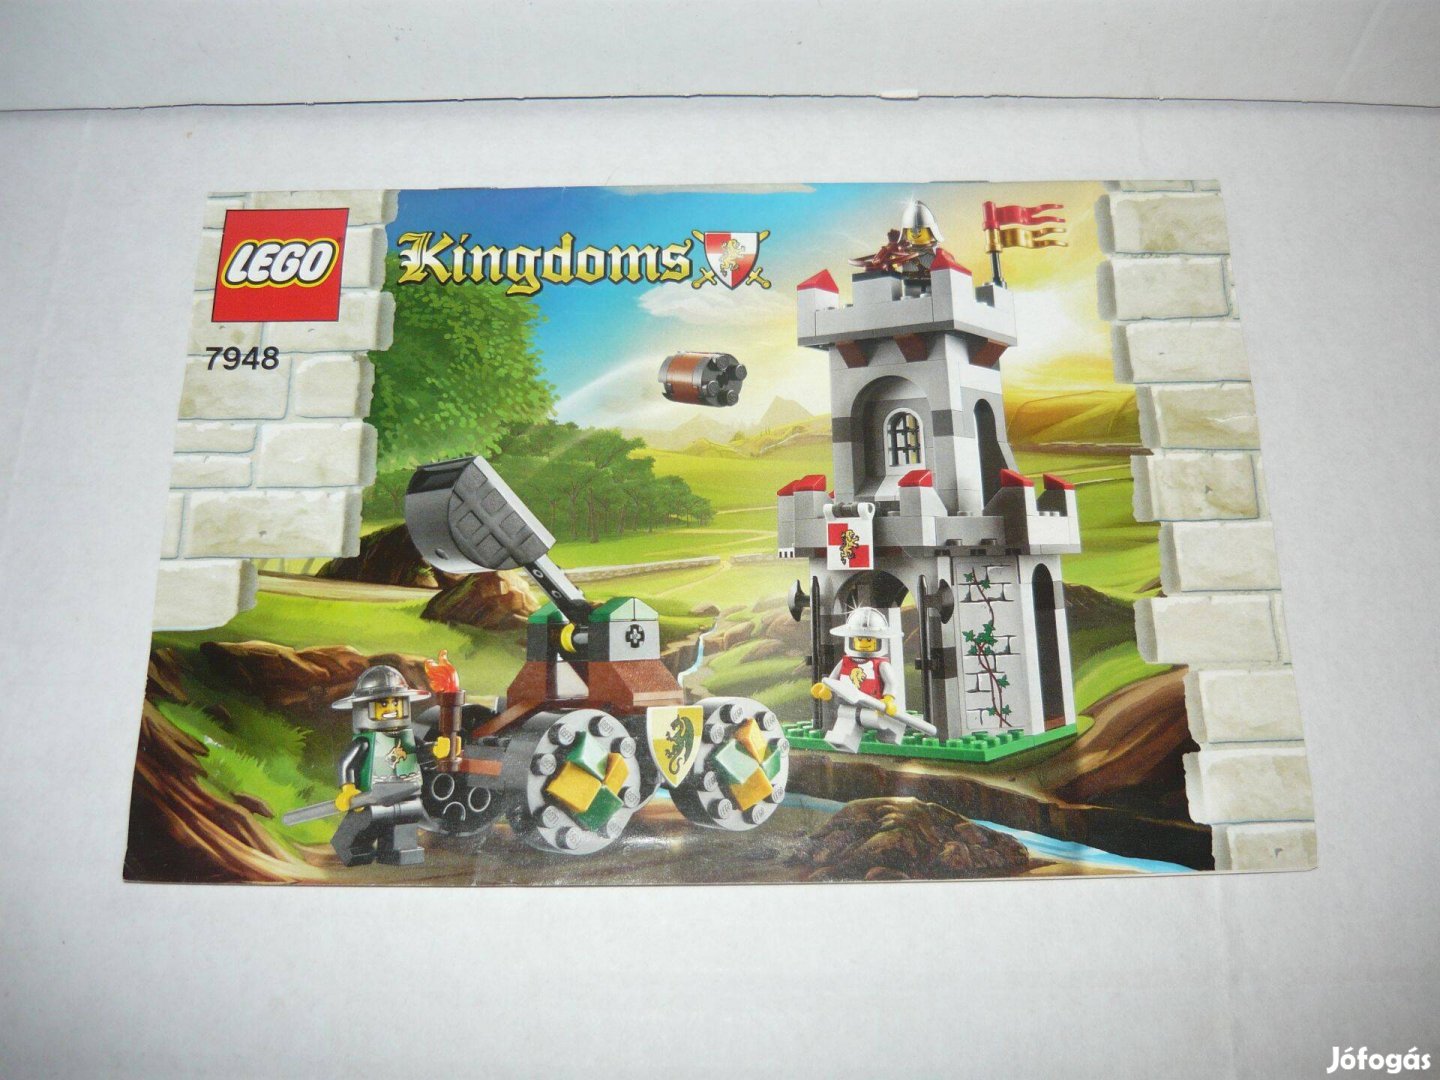 Lego összeszerelési útmutatók - Kingdoms, Technic